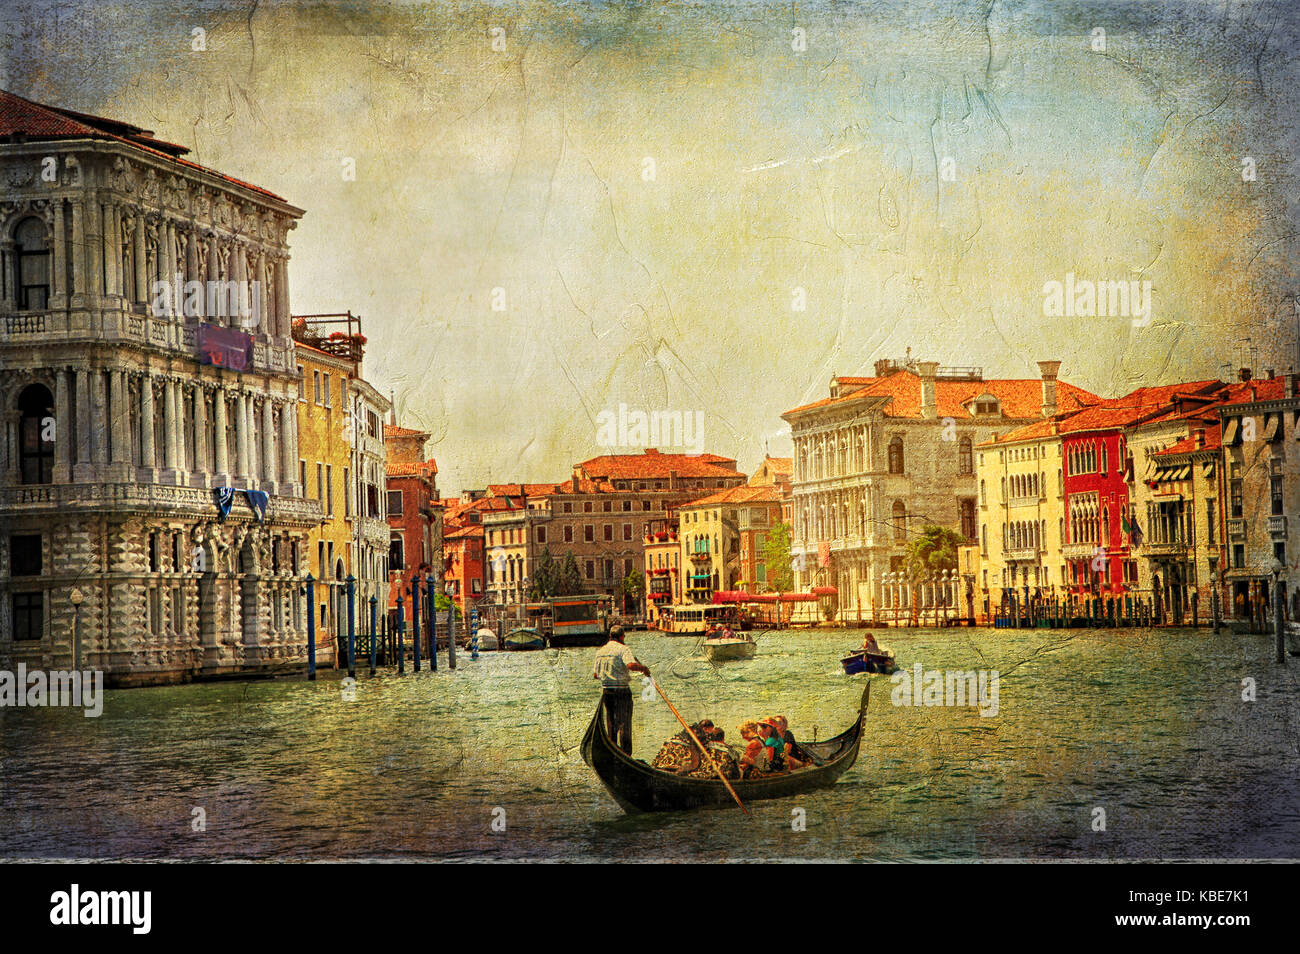 Belle romantique Venise - photo artistique dans le style de peinture Banque D'Images